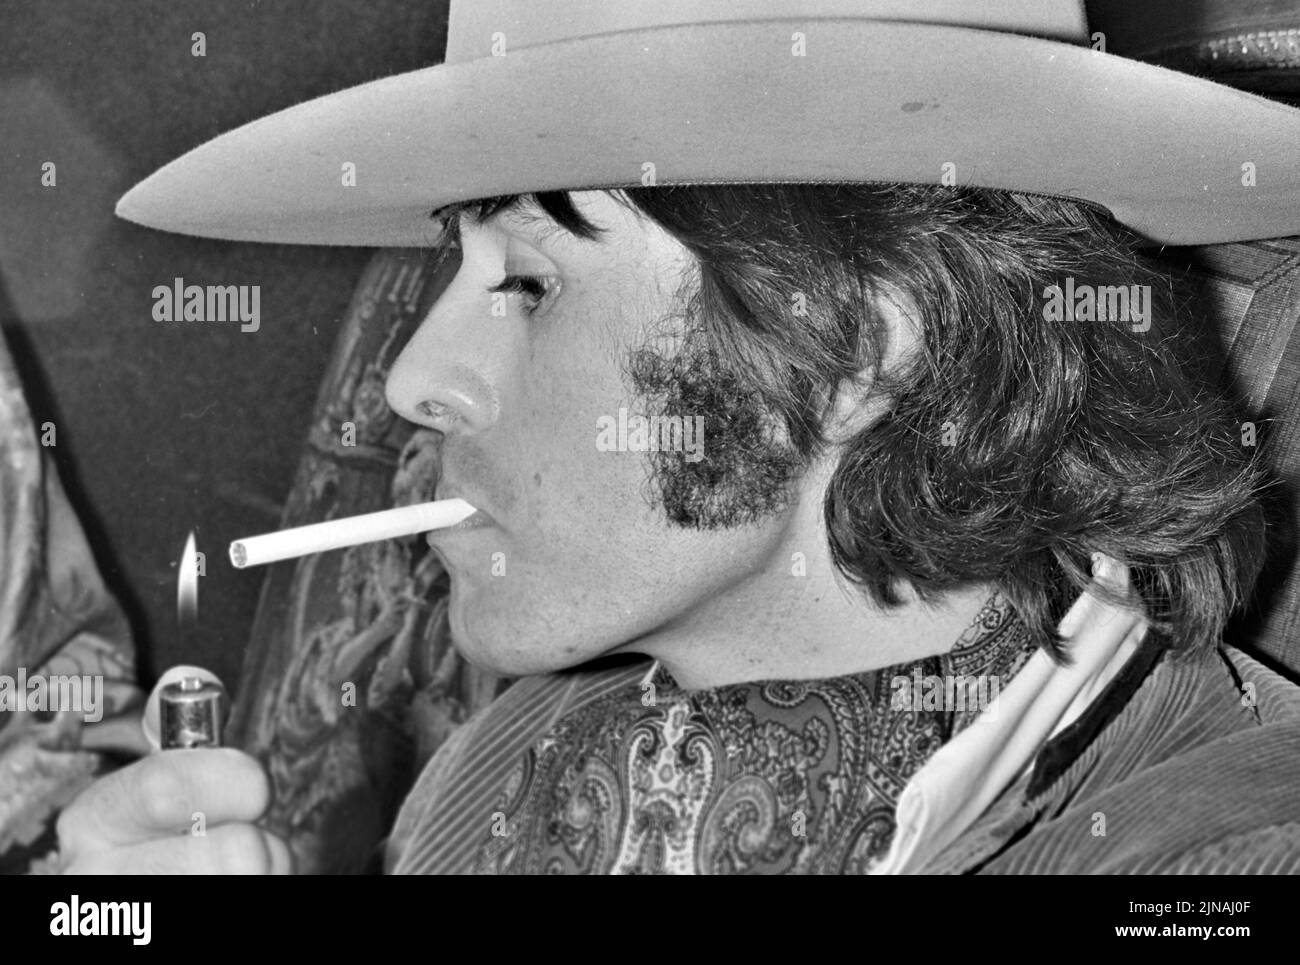 JEFFERSON AIRPLANE grupo de rock estadounidense con Spencer Davis en 1970 Foto de stock